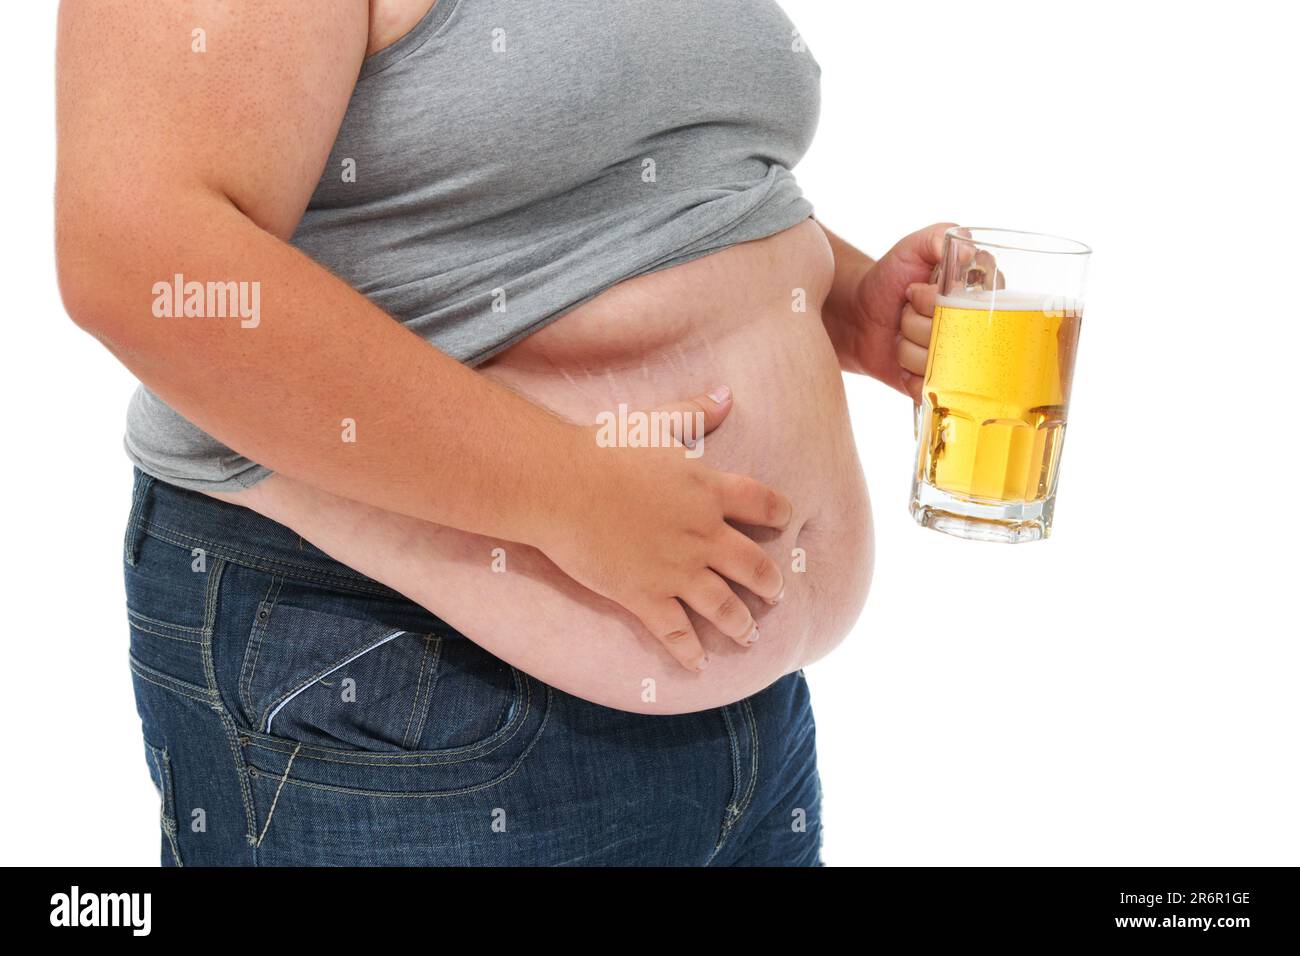 Bier, Gewichtszunahme und Magengröße plus in einem Studio mit  Alkoholproblem mit Darm-Gesundheitsproblem. Schwer, übergewichtig und  Kohlenhydrate mit ungesunden Stockfotografie - Alamy